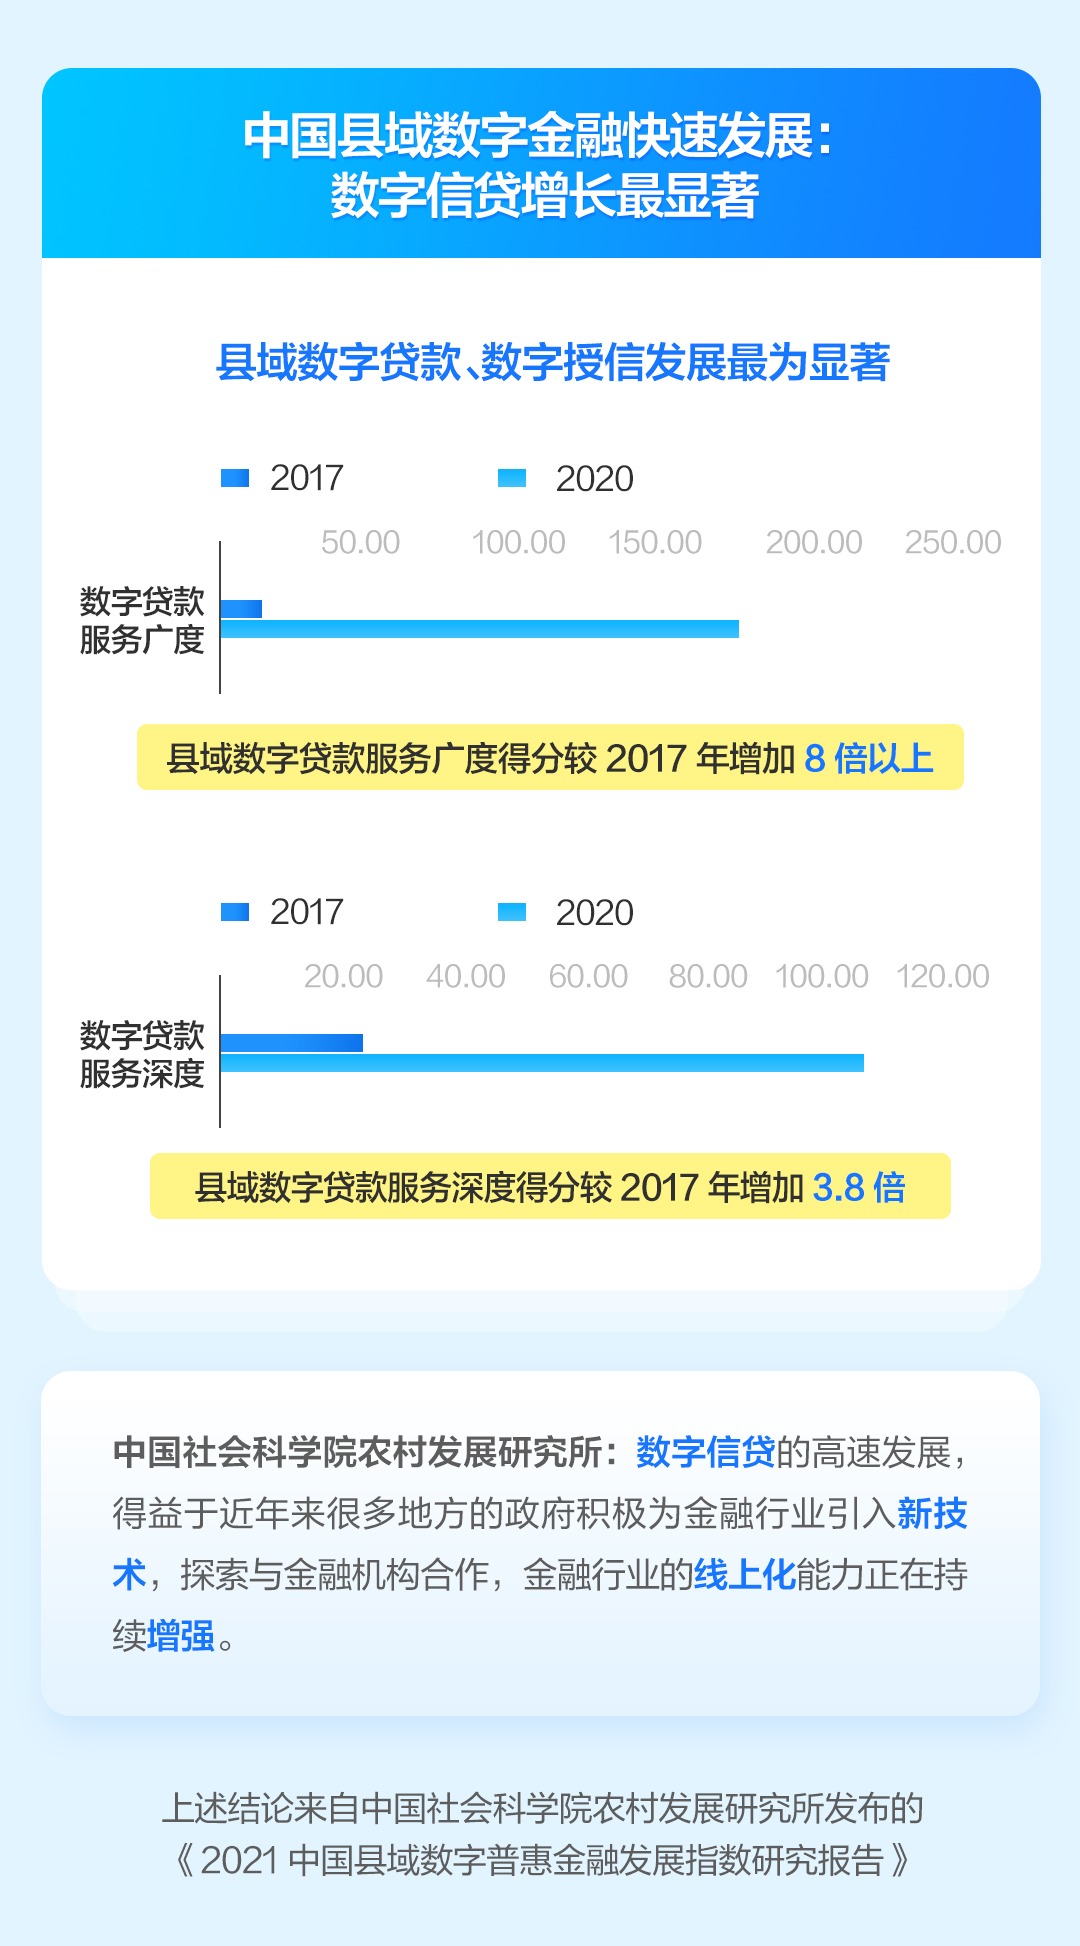 中国社会科学院农村发展研究所今日发布《中国县域数字普惠金融发展指数报告2021》